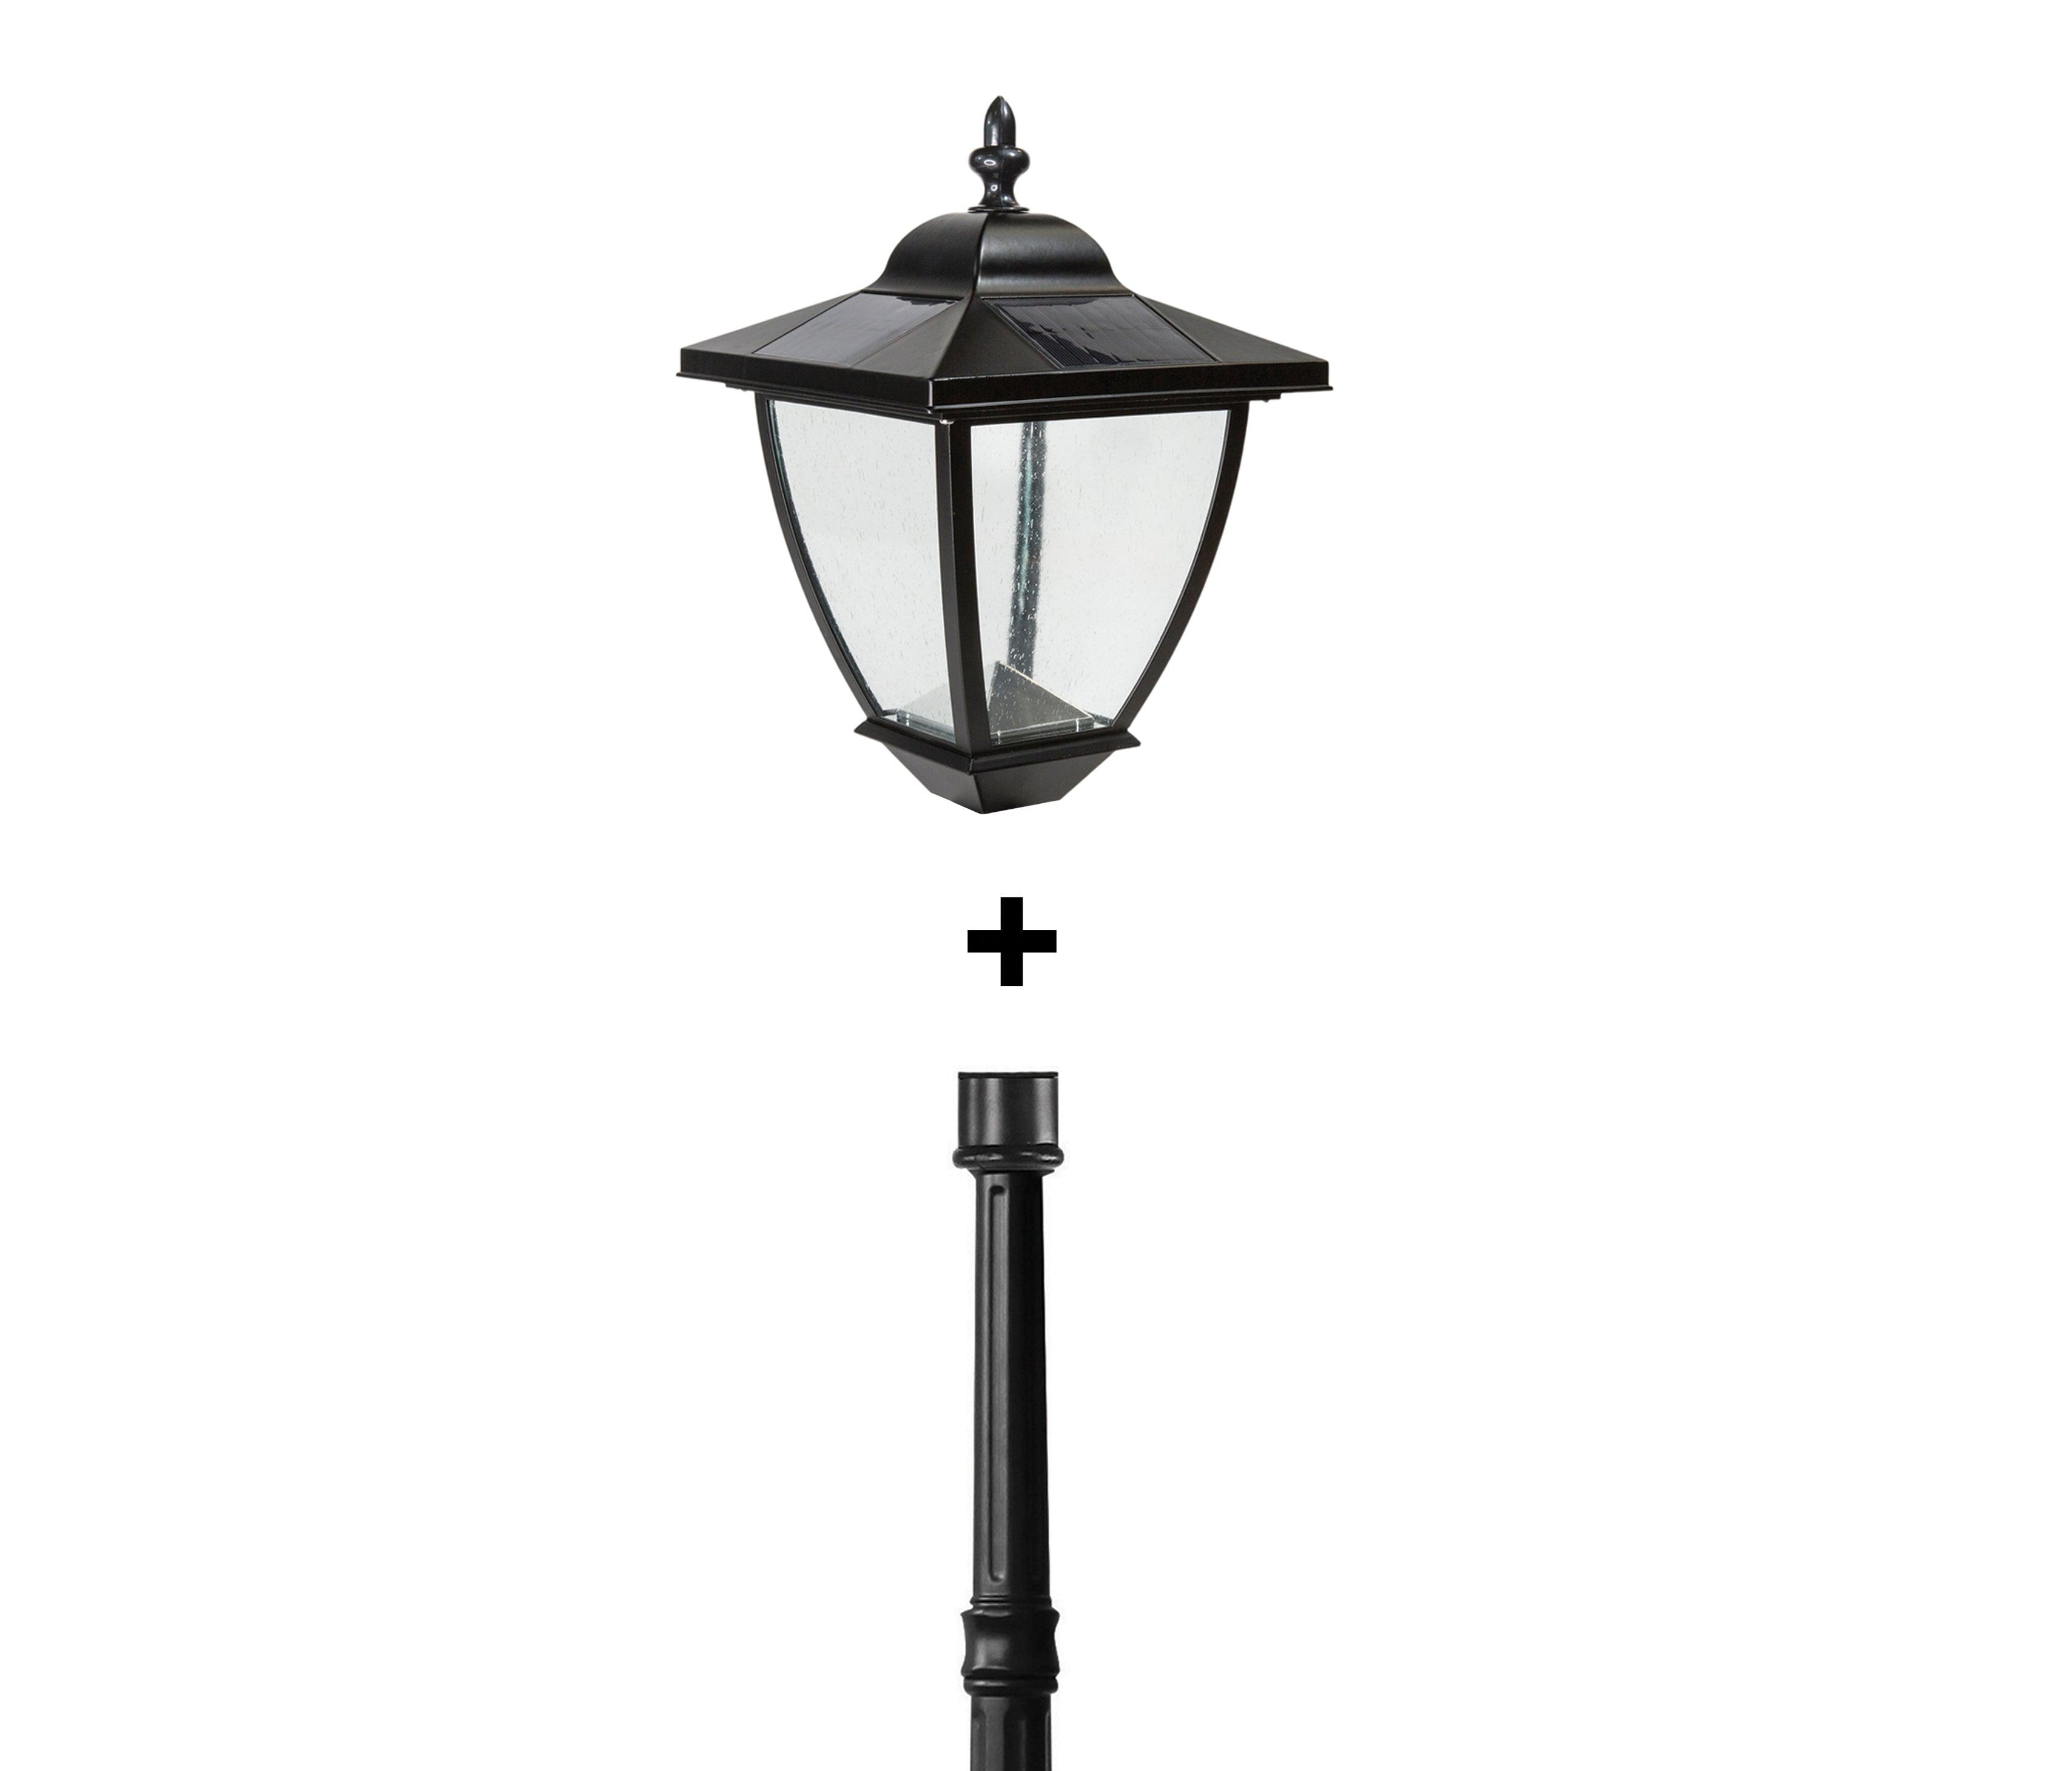 Black Aluminum Elegante Solar Lamp With Lamp Post Base - Classy Caps Mfg. Inc.